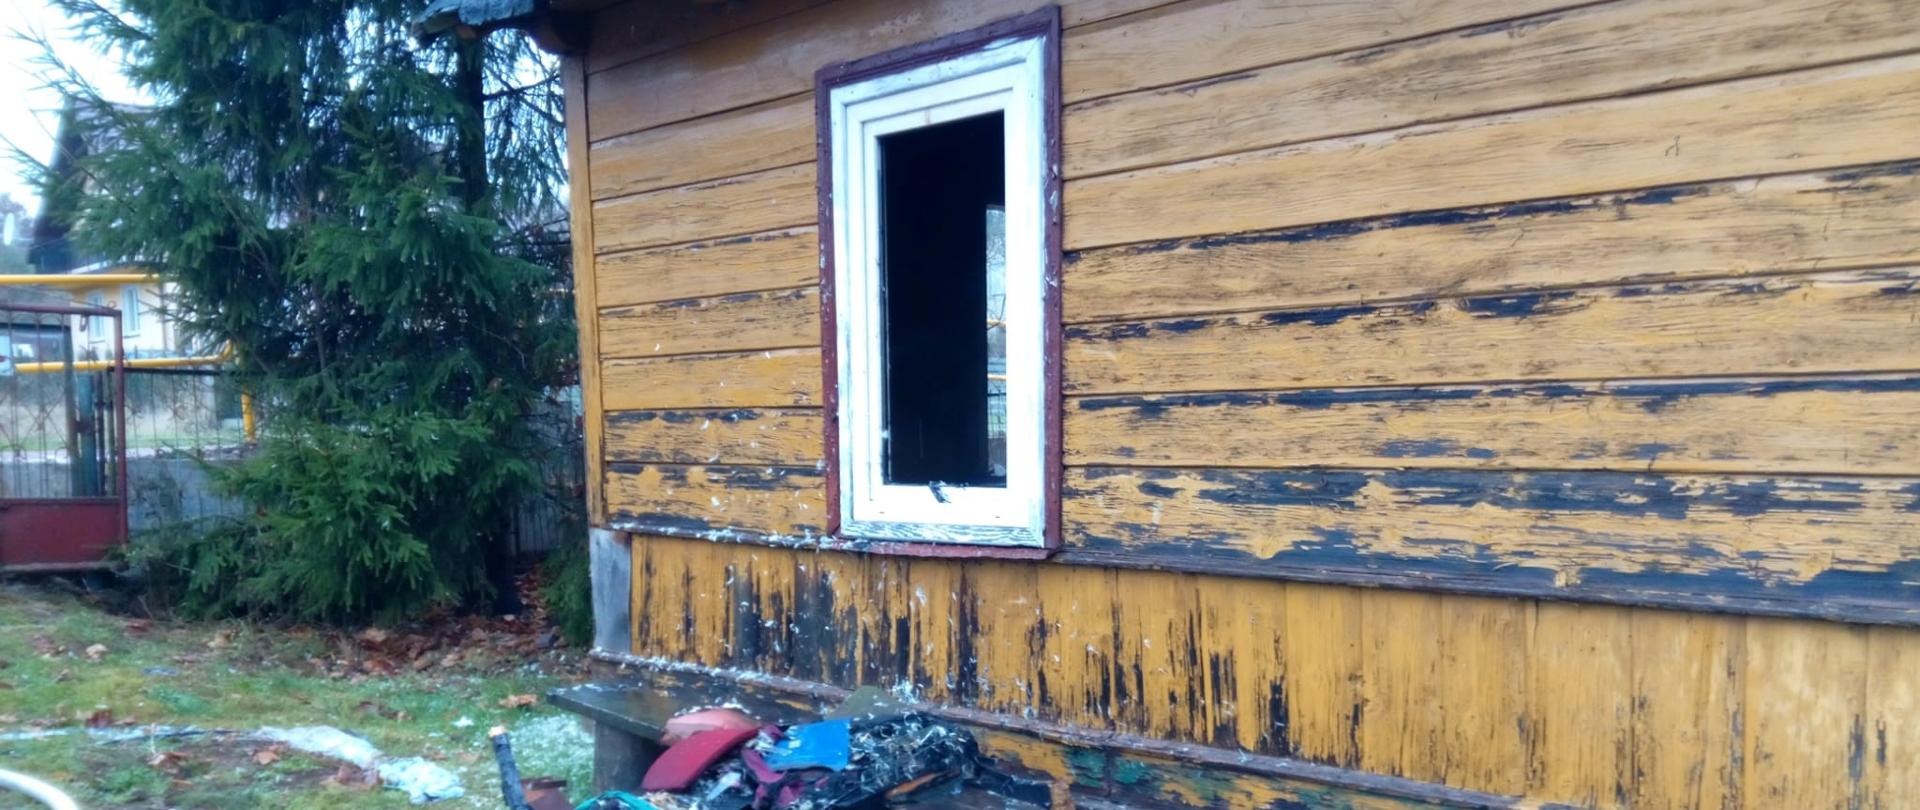 Zdjęcie przedstawia dom, gdzie doszło do pożaru. Widać wybite okno i nadpalone rzeczy usunięte z budynku.